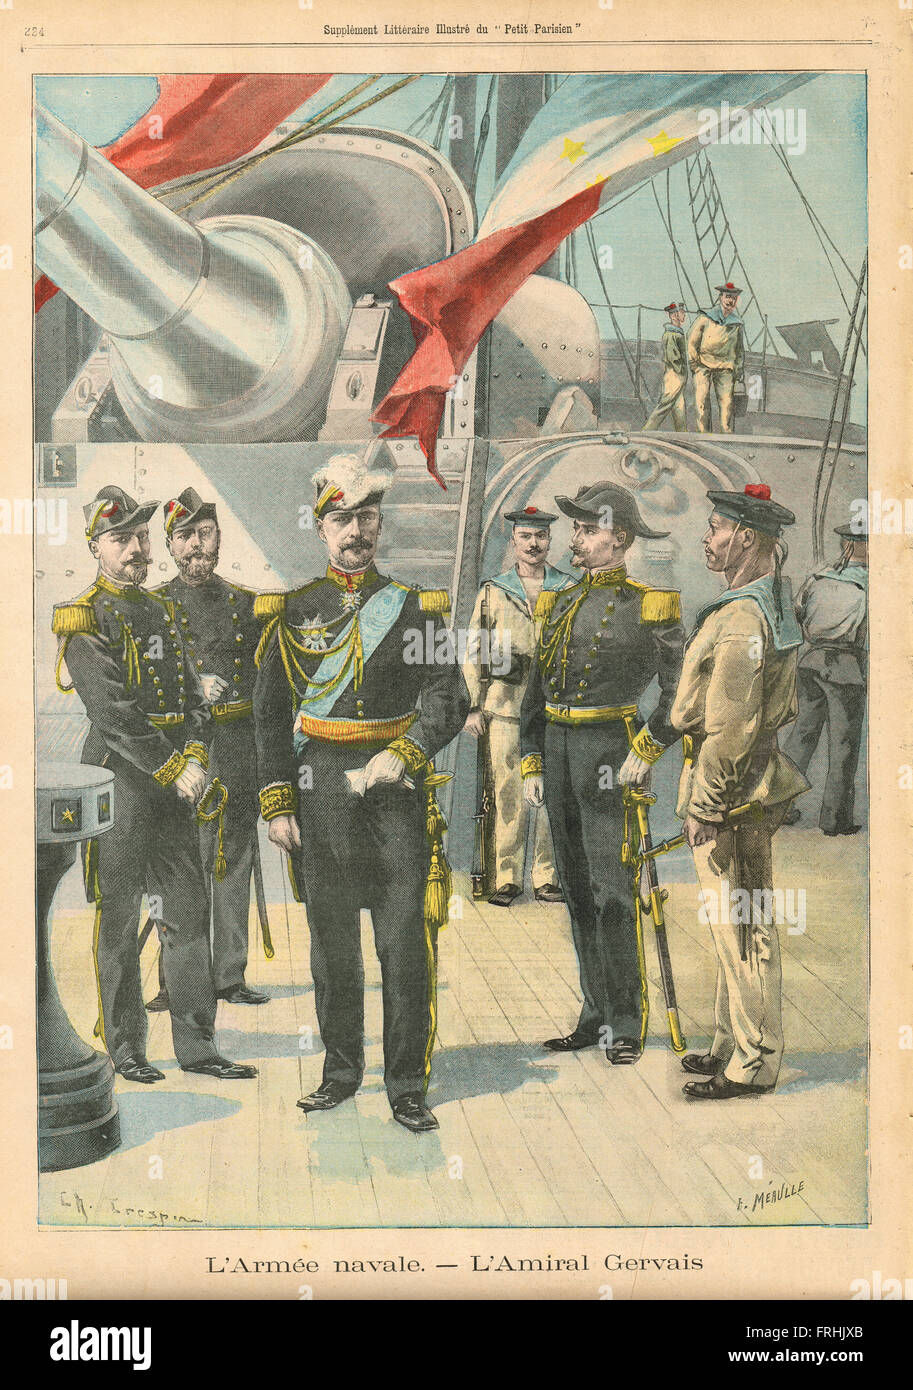 Chef de la Marine française amiral Gervais 1900. Illustration du petit parisien dans le journal français illustré Banque D'Images